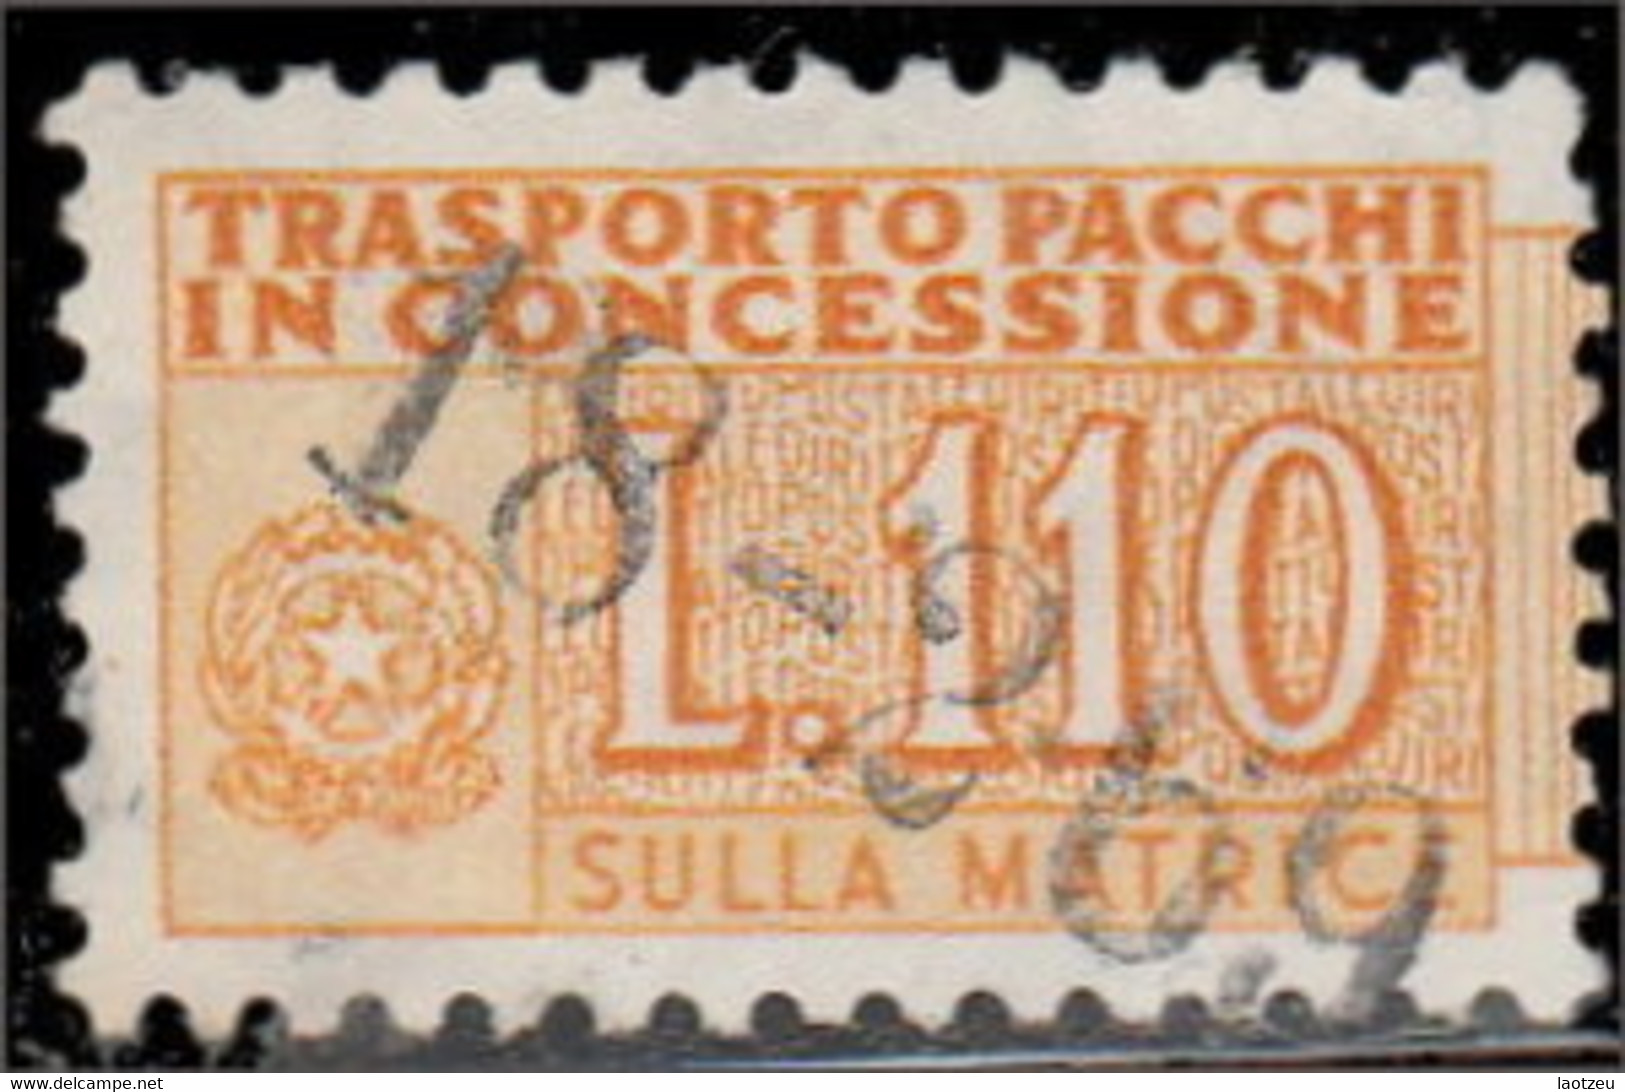 Italie Colis Postaux 1956. ~ CP 98  - 110 L. Chiffre - Paketmarken